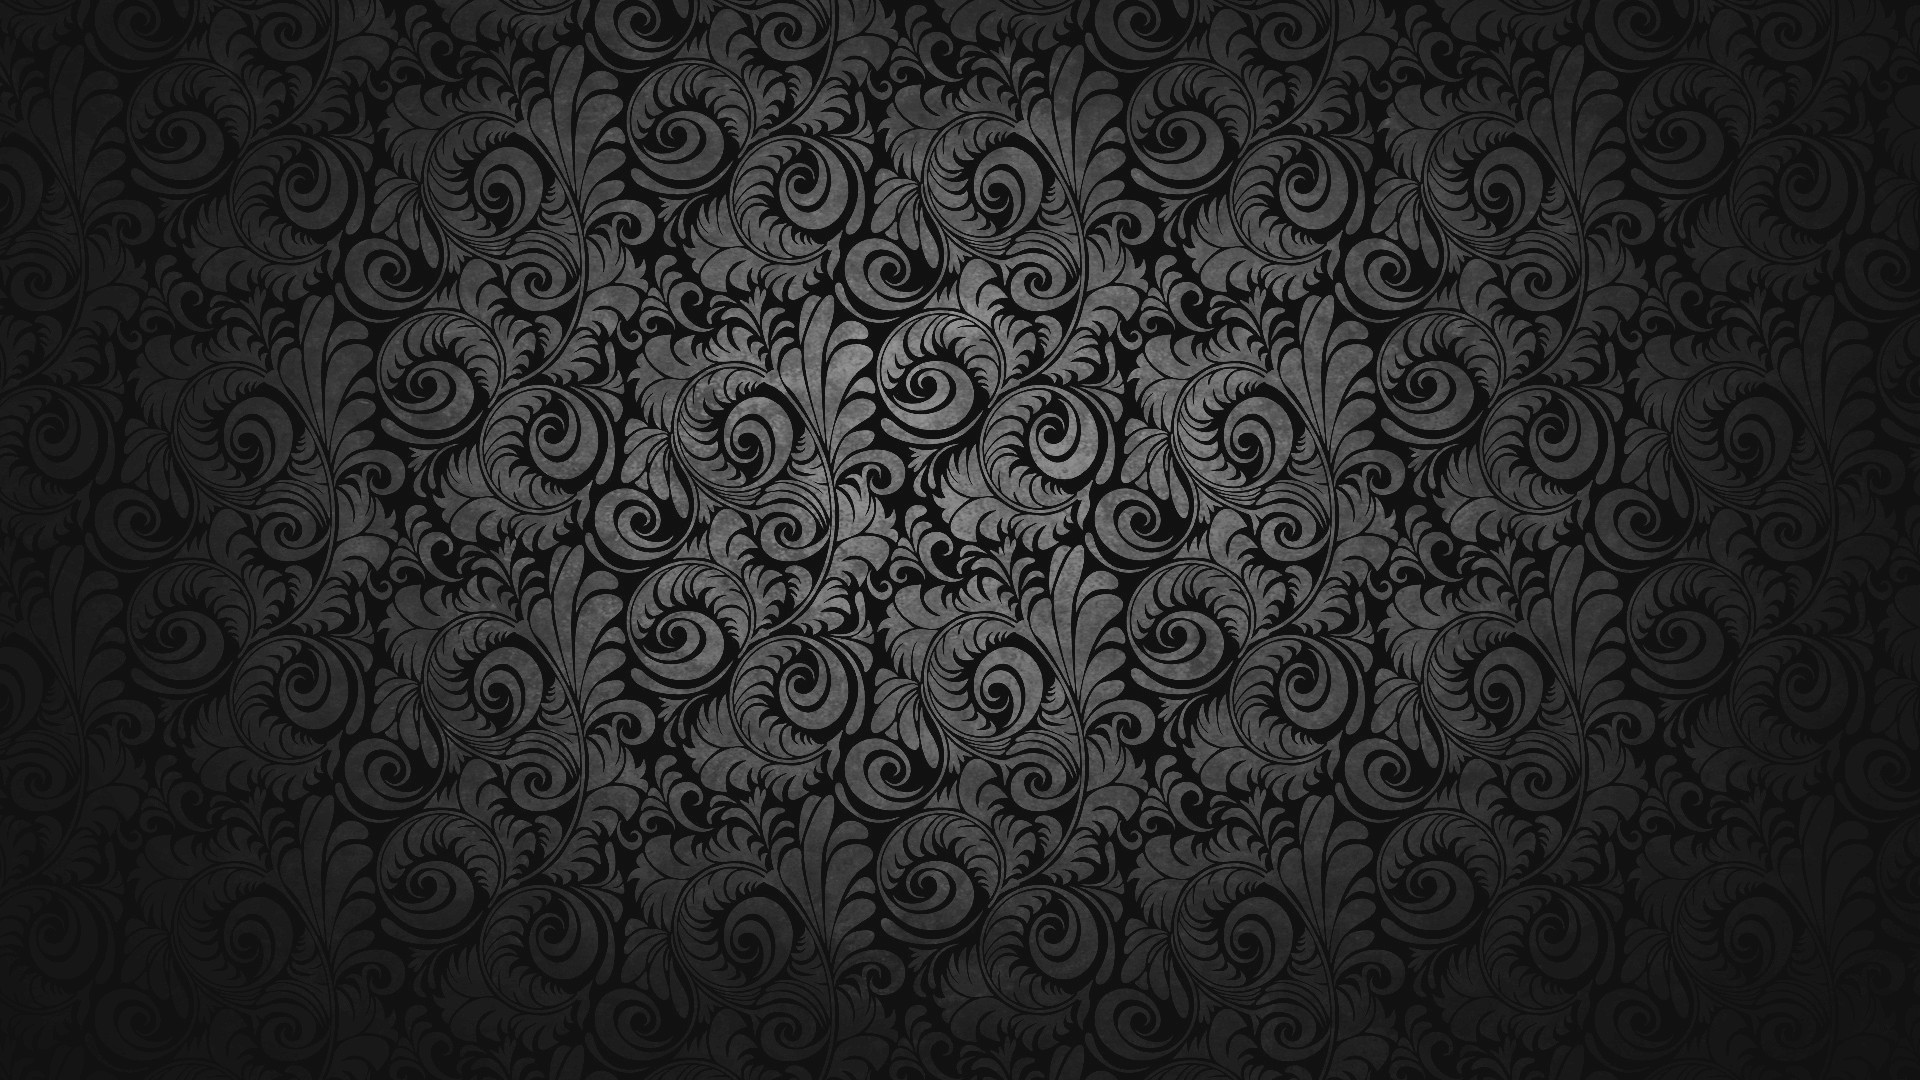 75+] Dark Backgrounds - WallpaperSafari